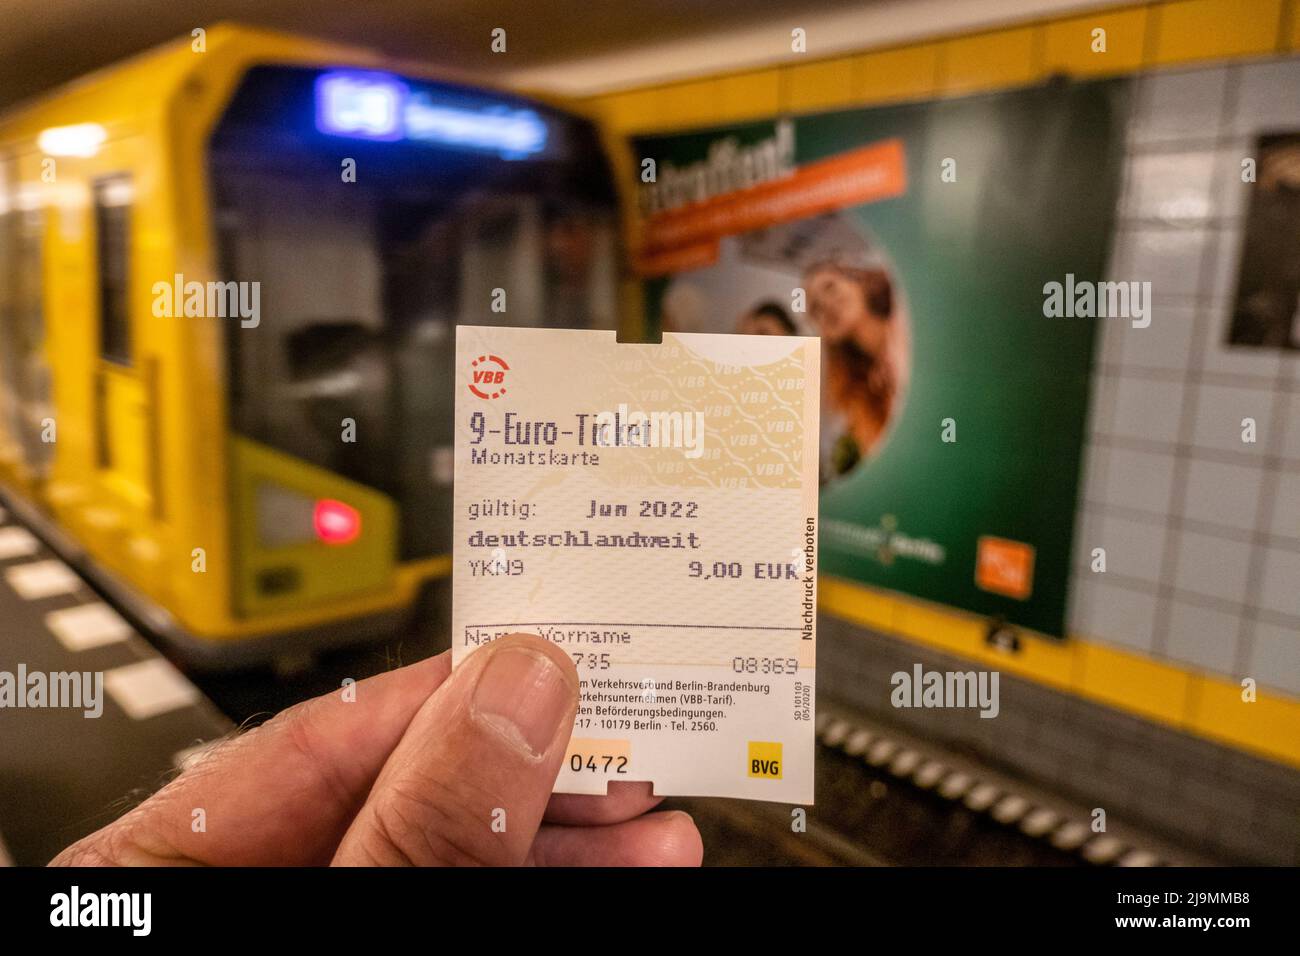 9 Euro biglietto, Verbilligtes Monatsticket für den ÖPNV und bundesweit alle Regionalzüge zum Kompensieren der hohen Spritpreise ab 1.Juni. 9-euro-ticke Foto Stock